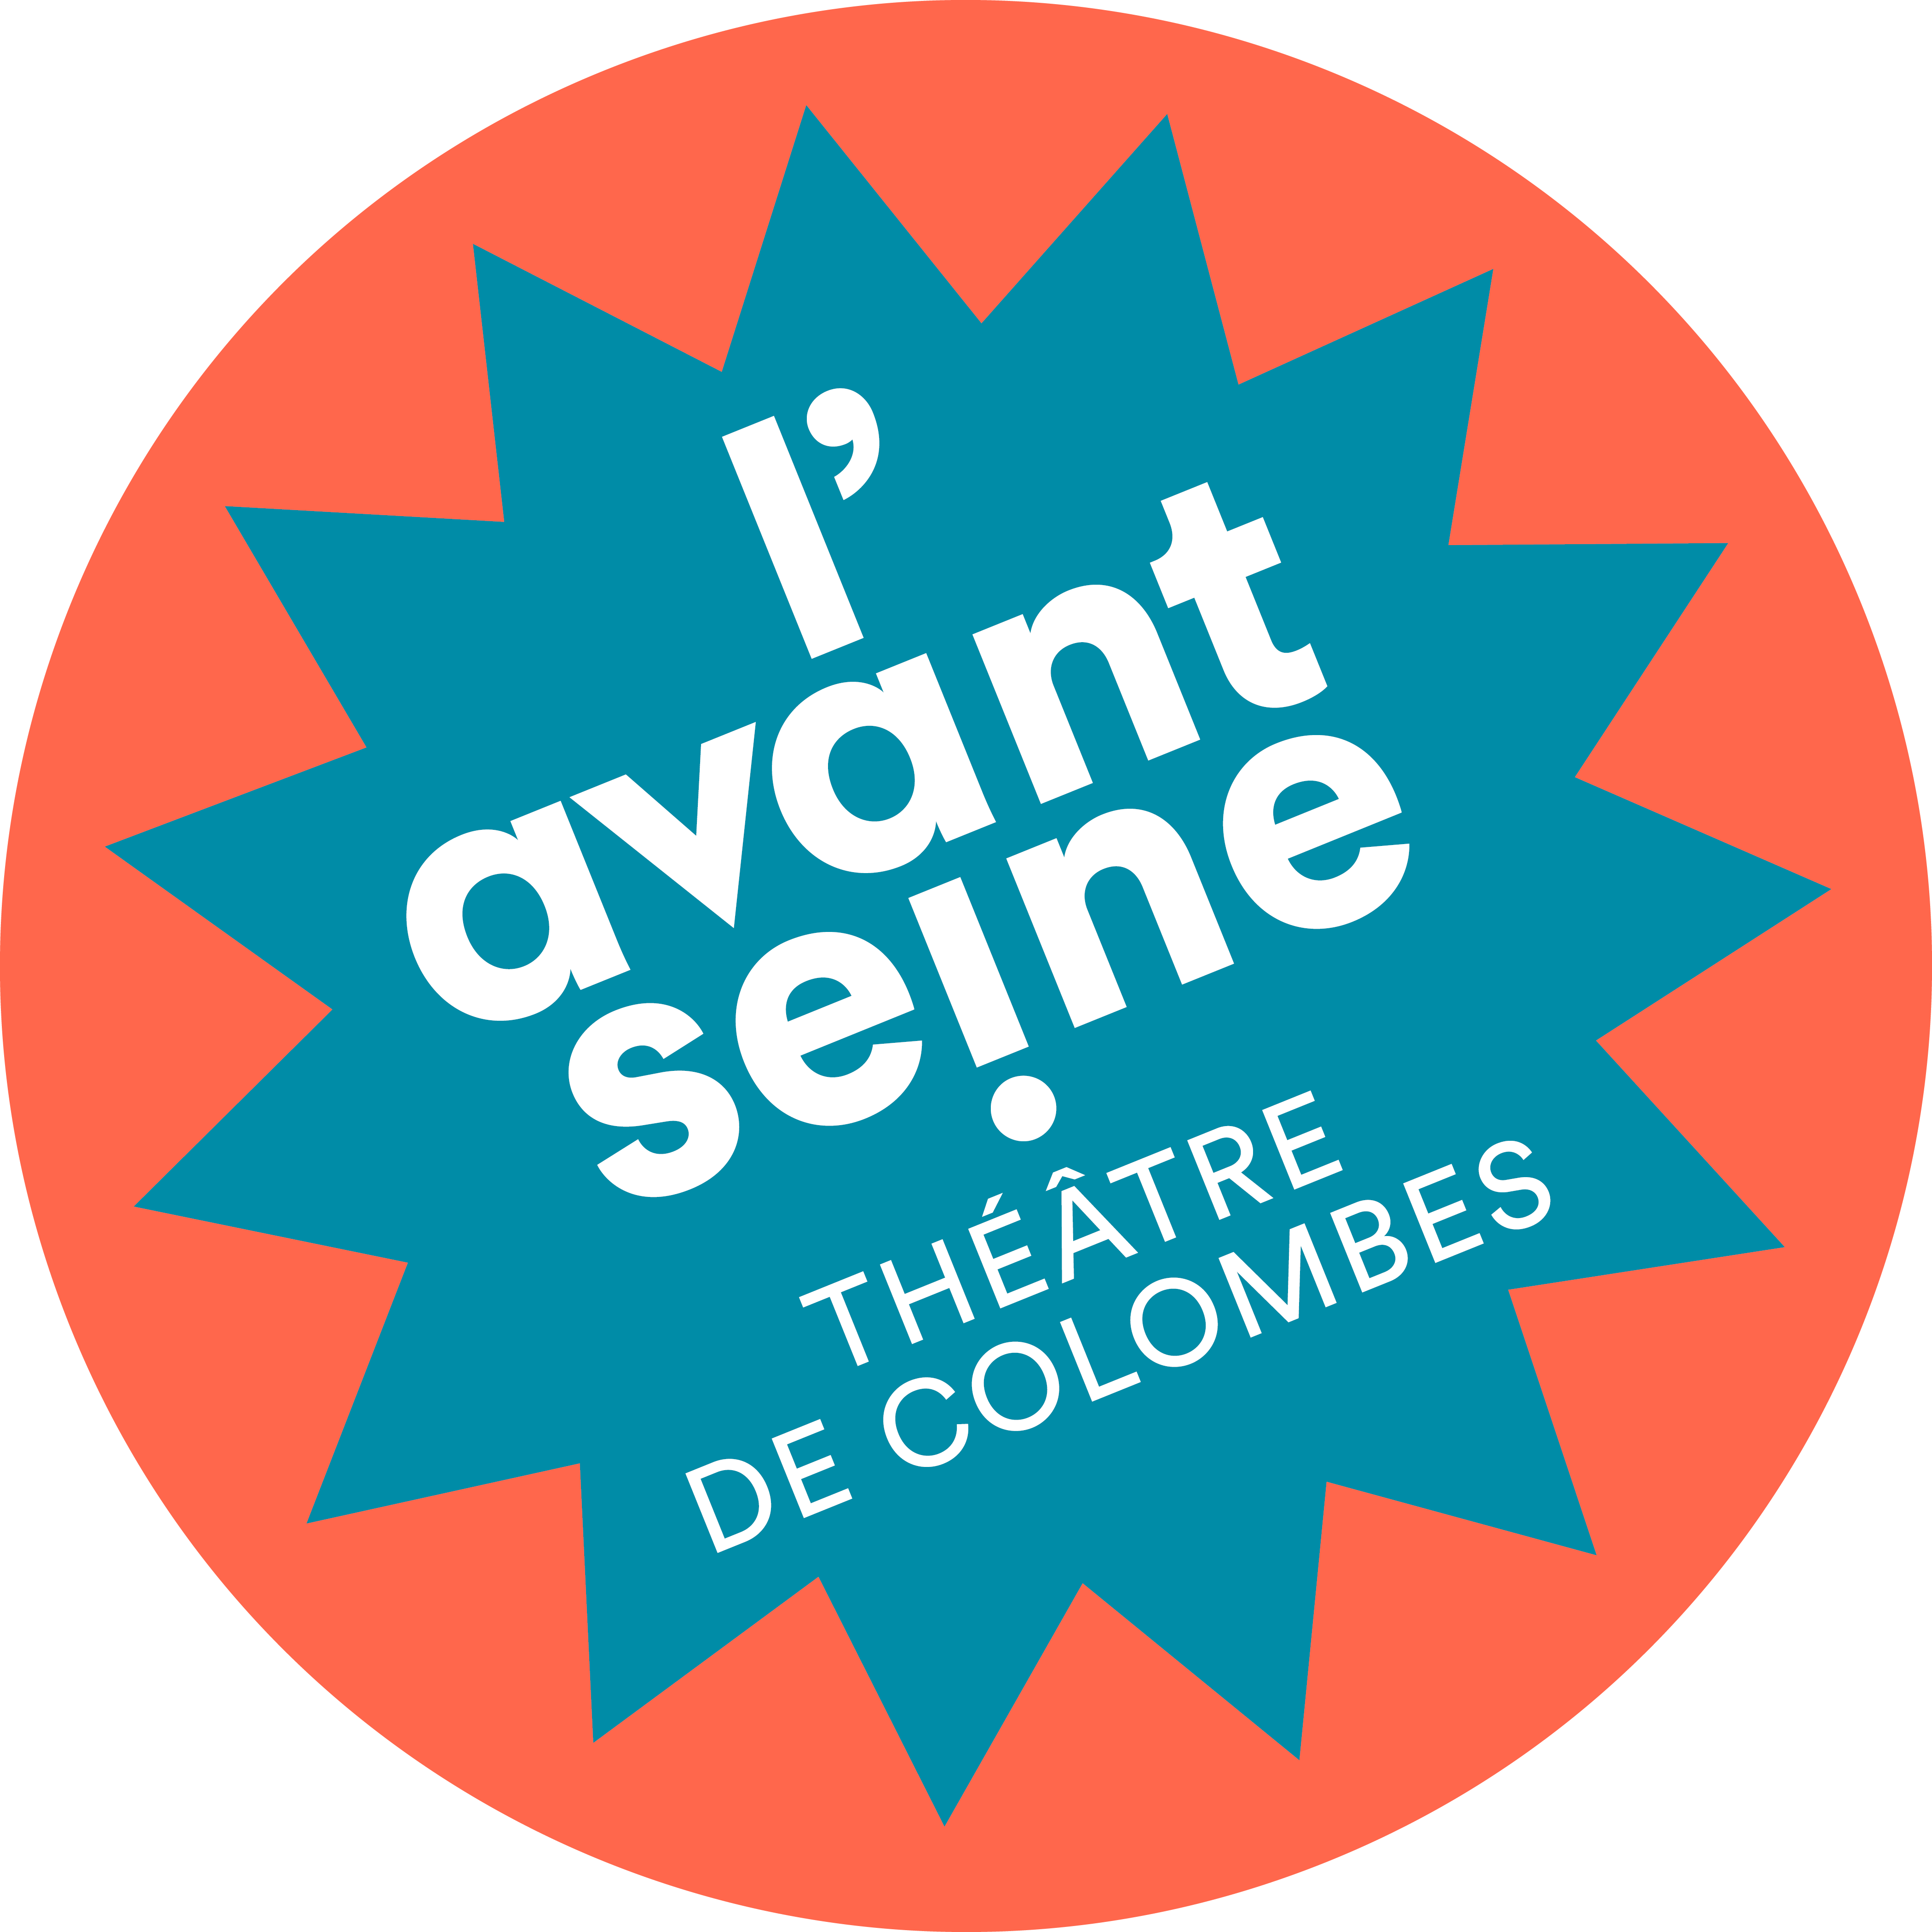 l'Avant Seine / Théâtre de Colombes